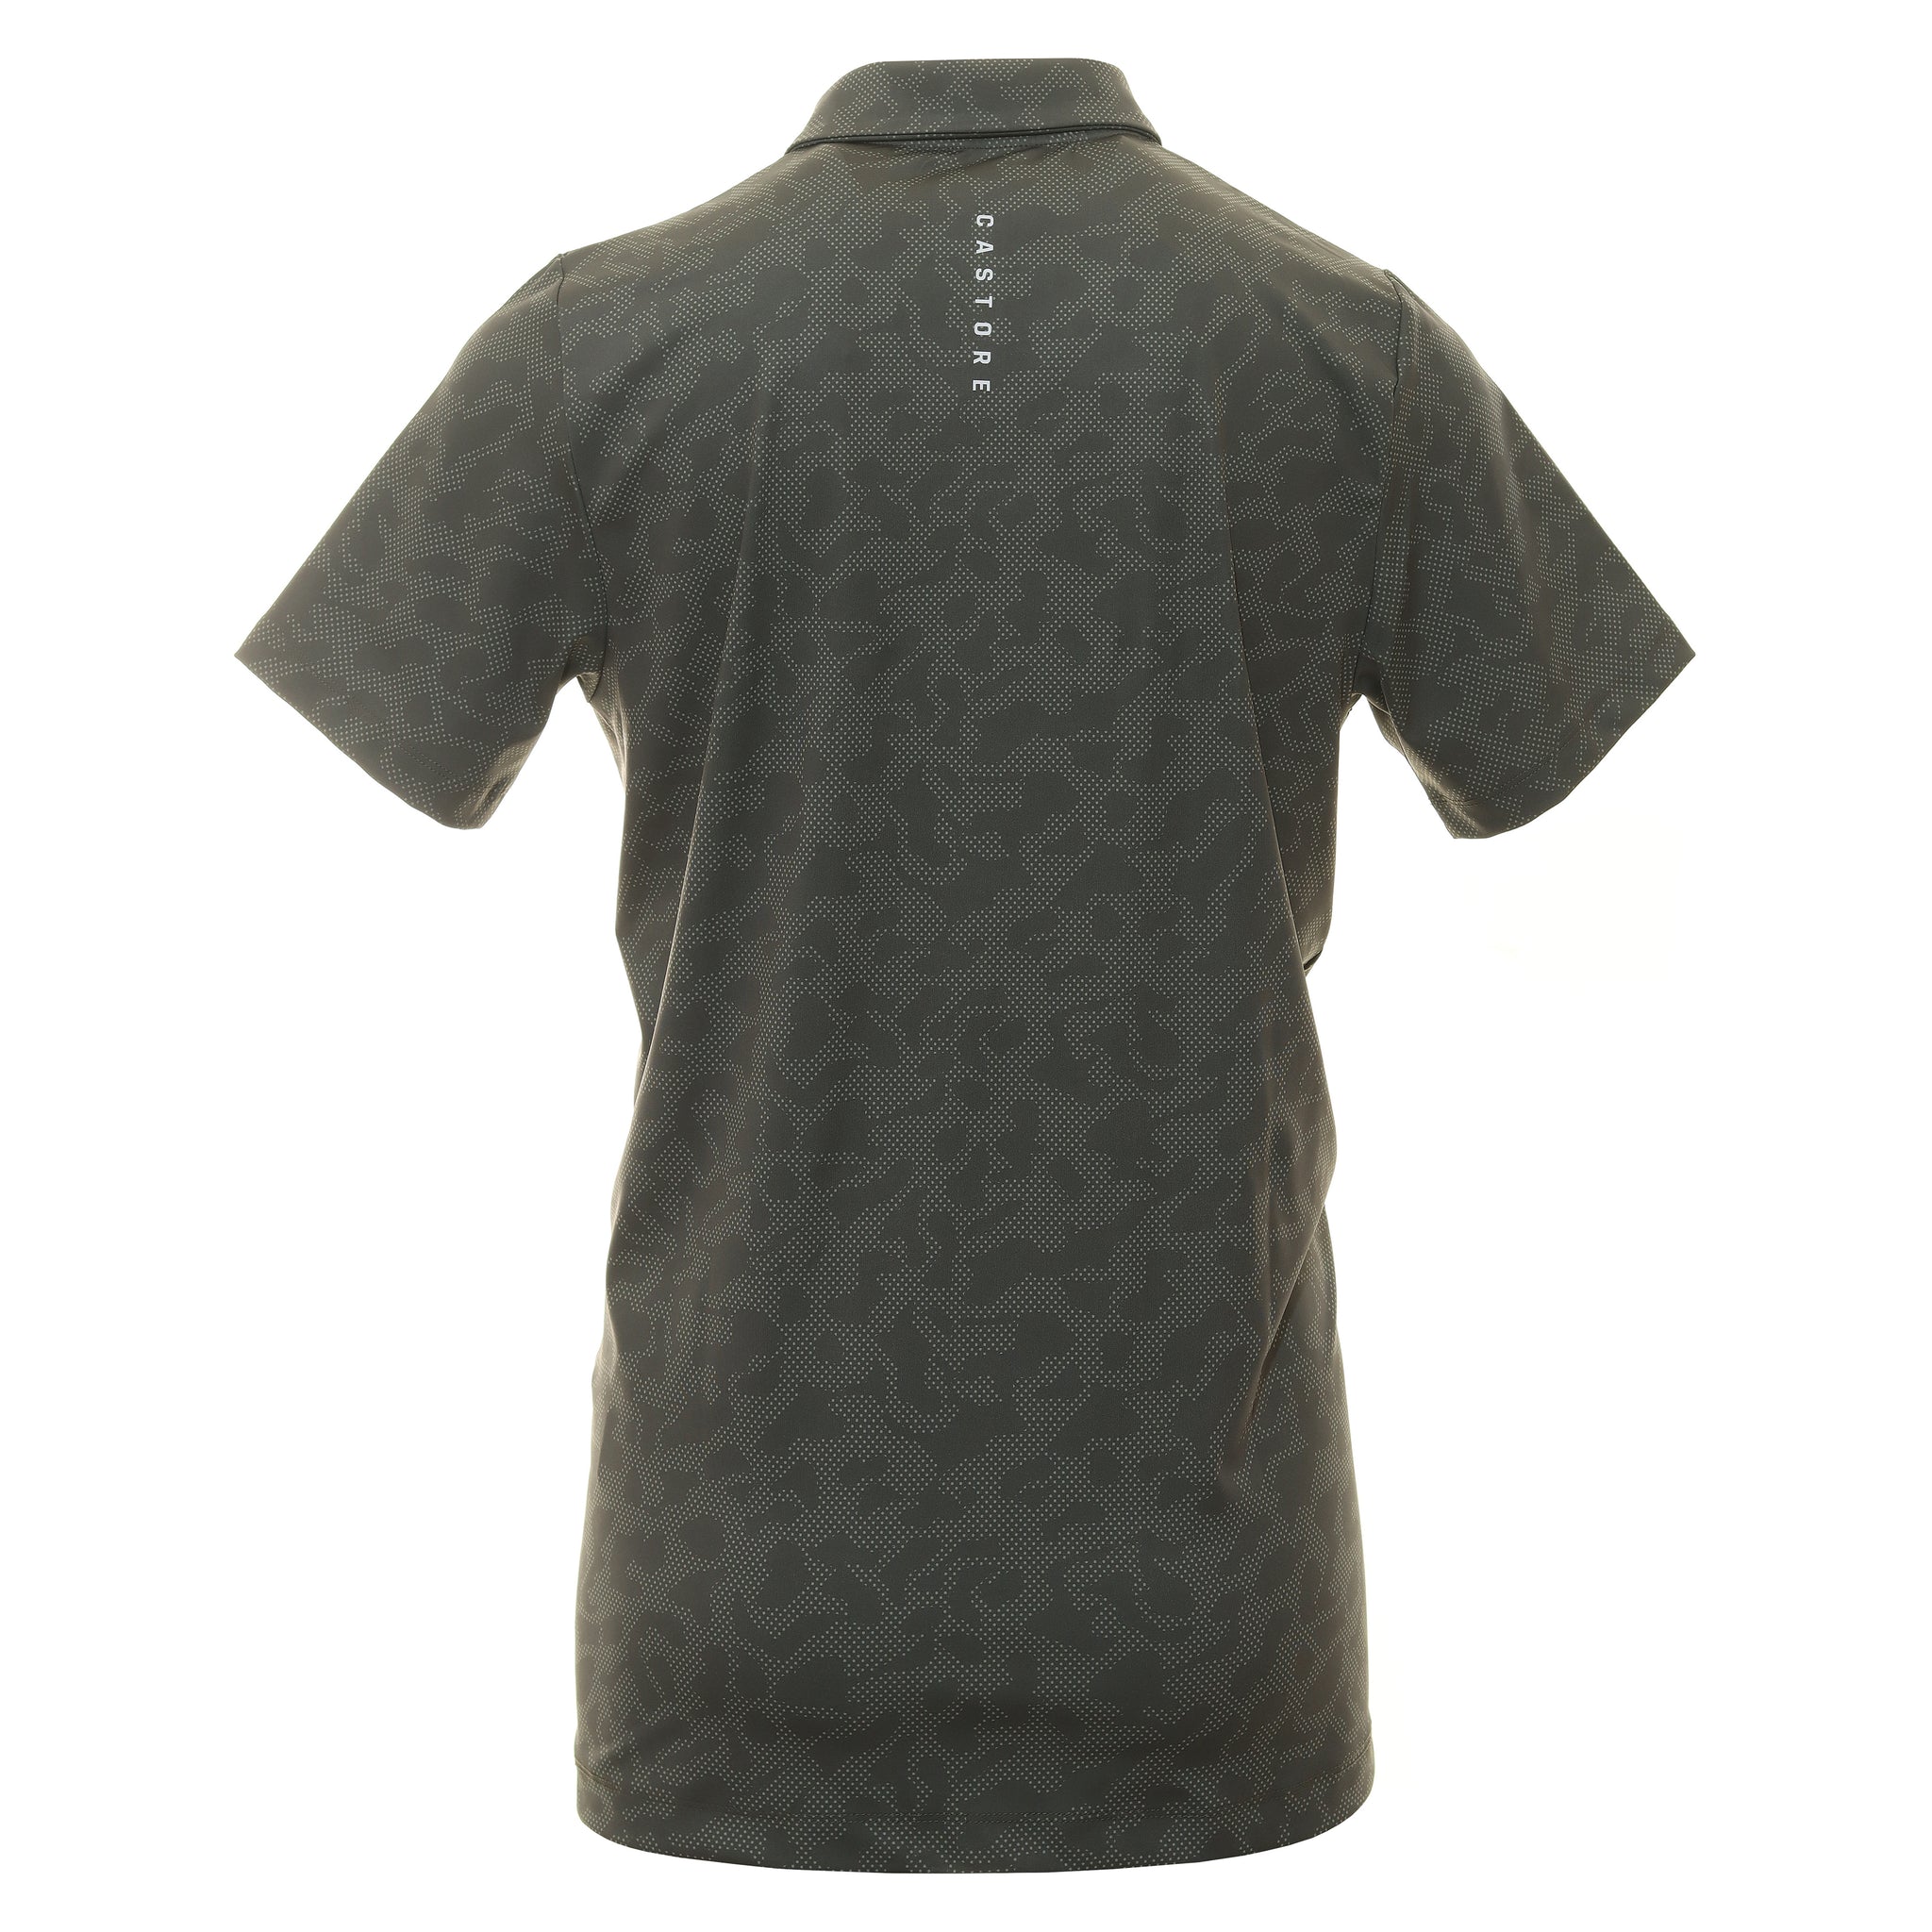 castore-printed-golf-polo-shirt-cma30365-khaki